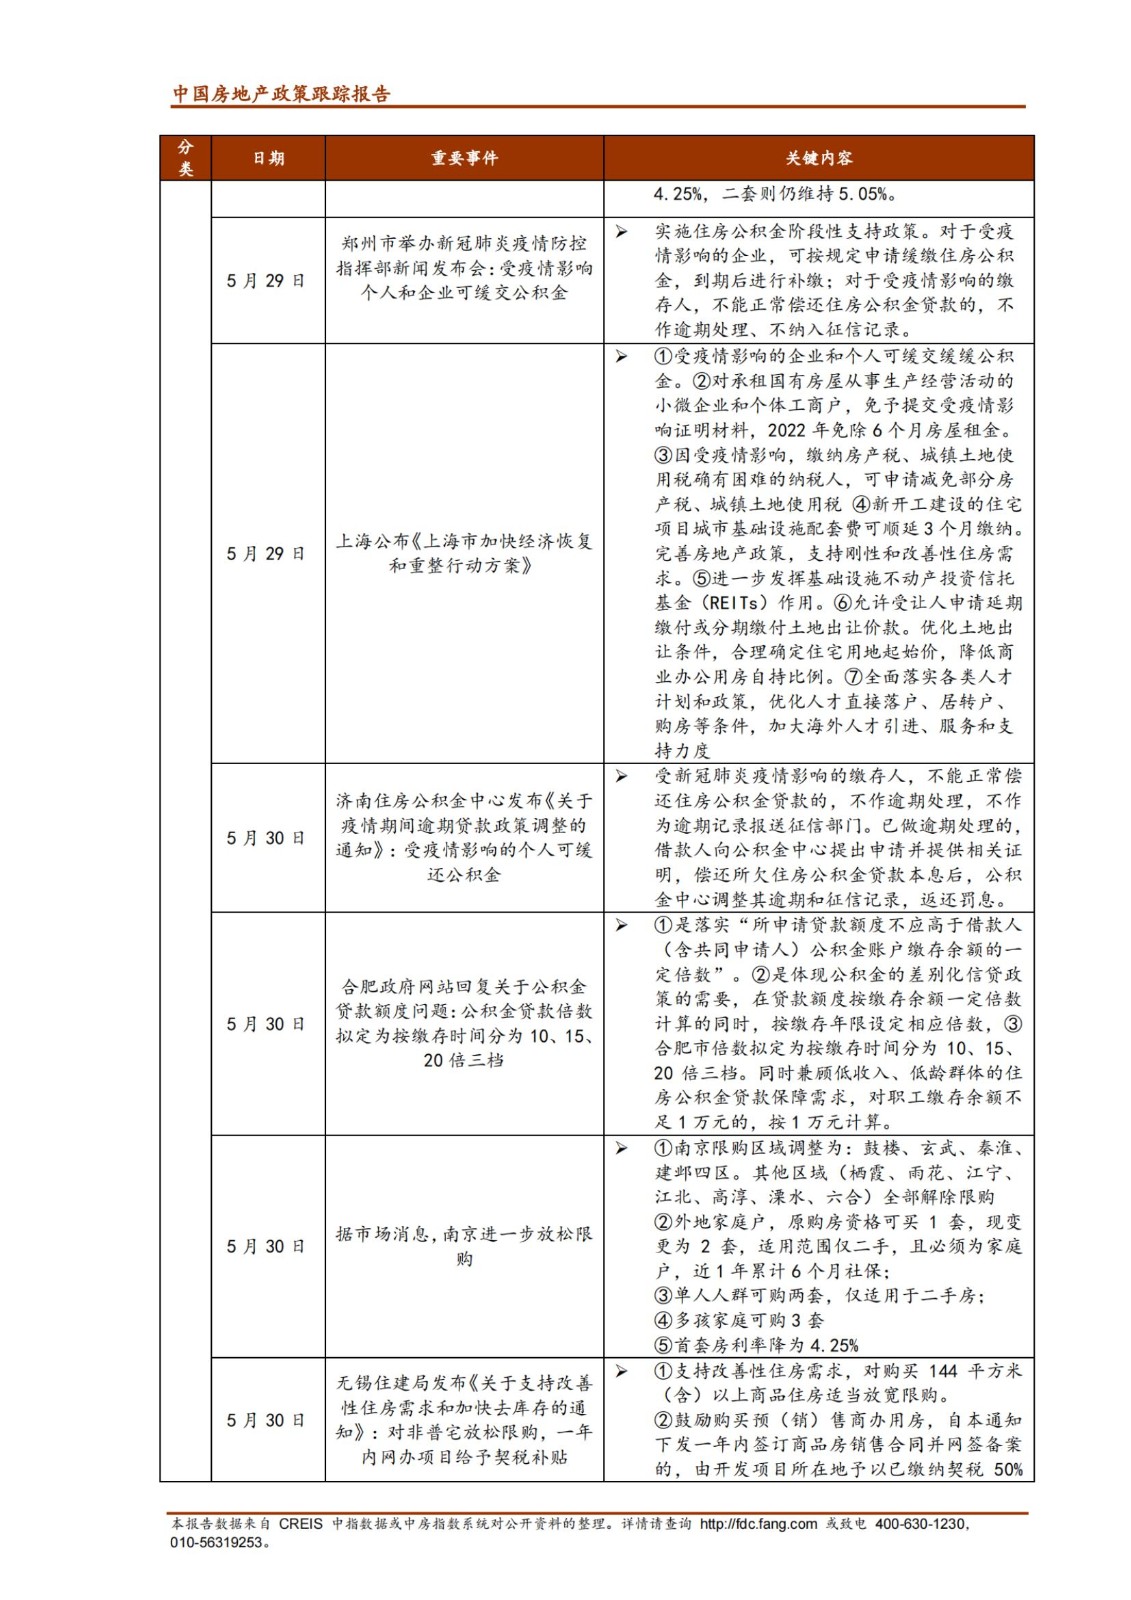 《中指丨中国房地产政策跟踪报告（2022年5月）》_纯图版_19.jpg